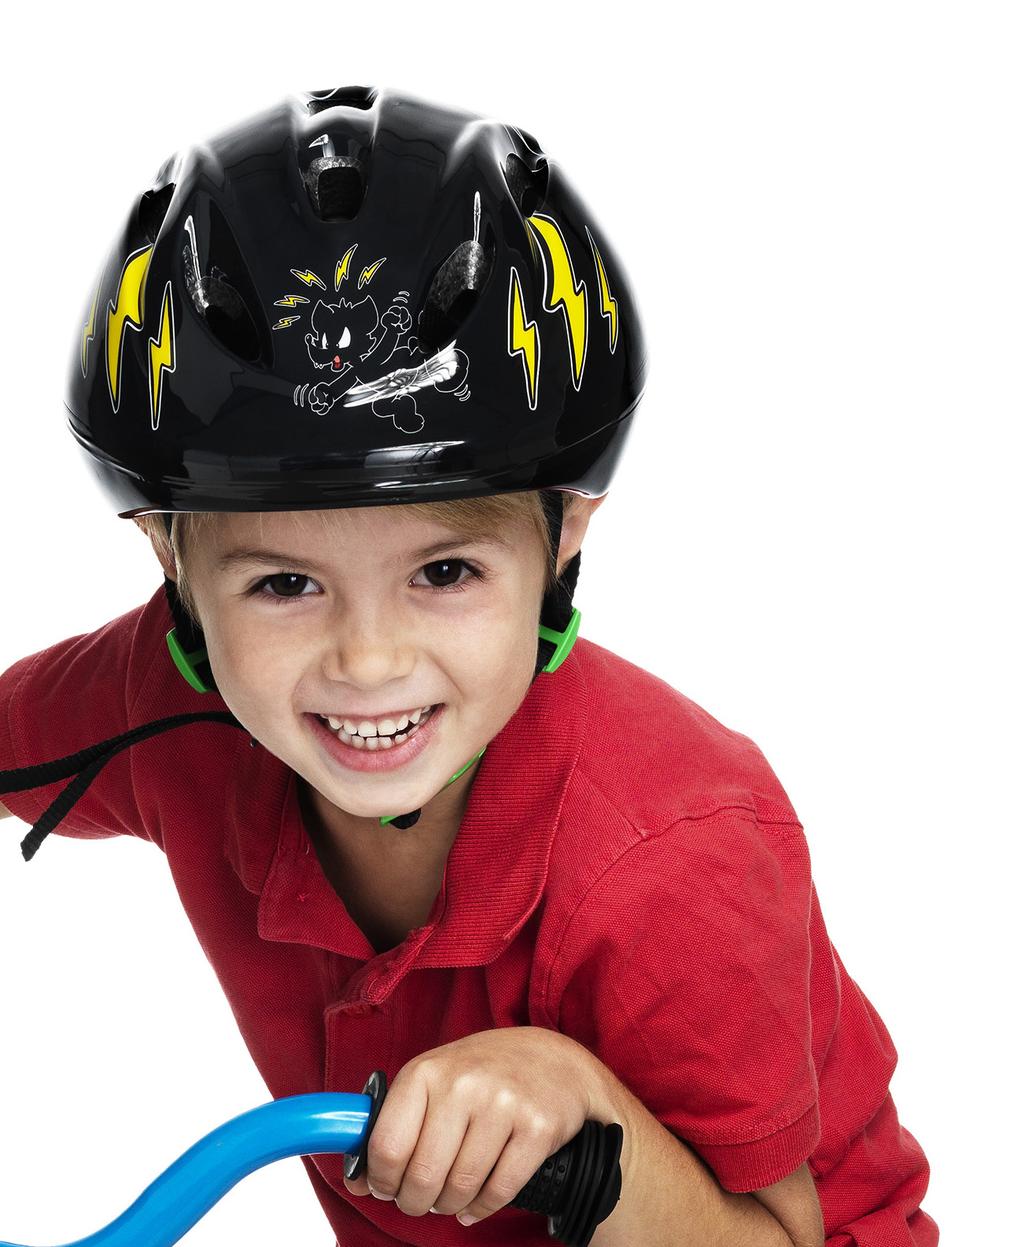 Våra cykelhjälmar är av yppersta kvalitet och uppfyller standarden EN1080, vilket är godkända cykelhjälmar för barn under 7 år. Utrustade med grönt spänne och rattjustering.